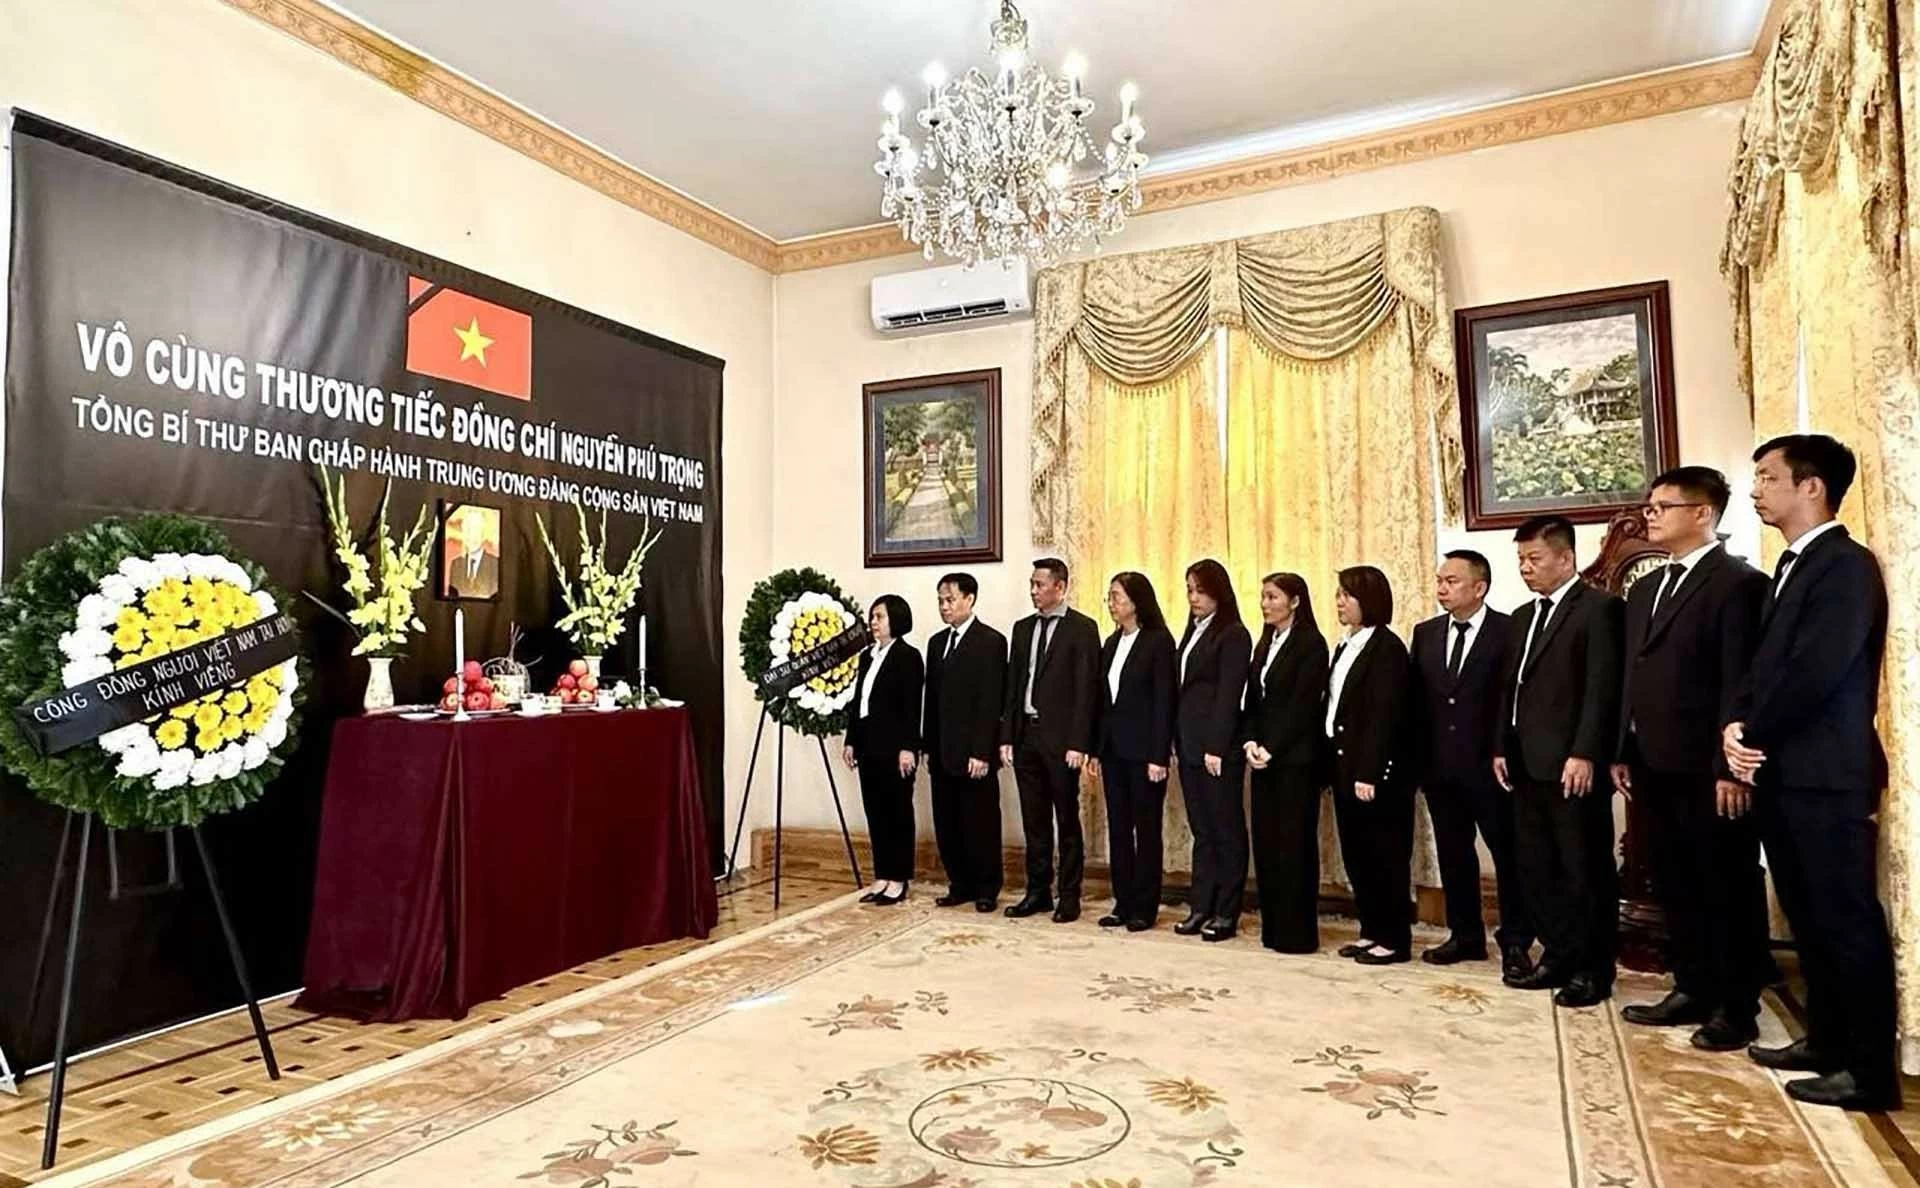 Di sản của Tổng Bí thư Nguyễn Phú Trọng sẽ truyền cảm hứng cho các thế hệ tương lai